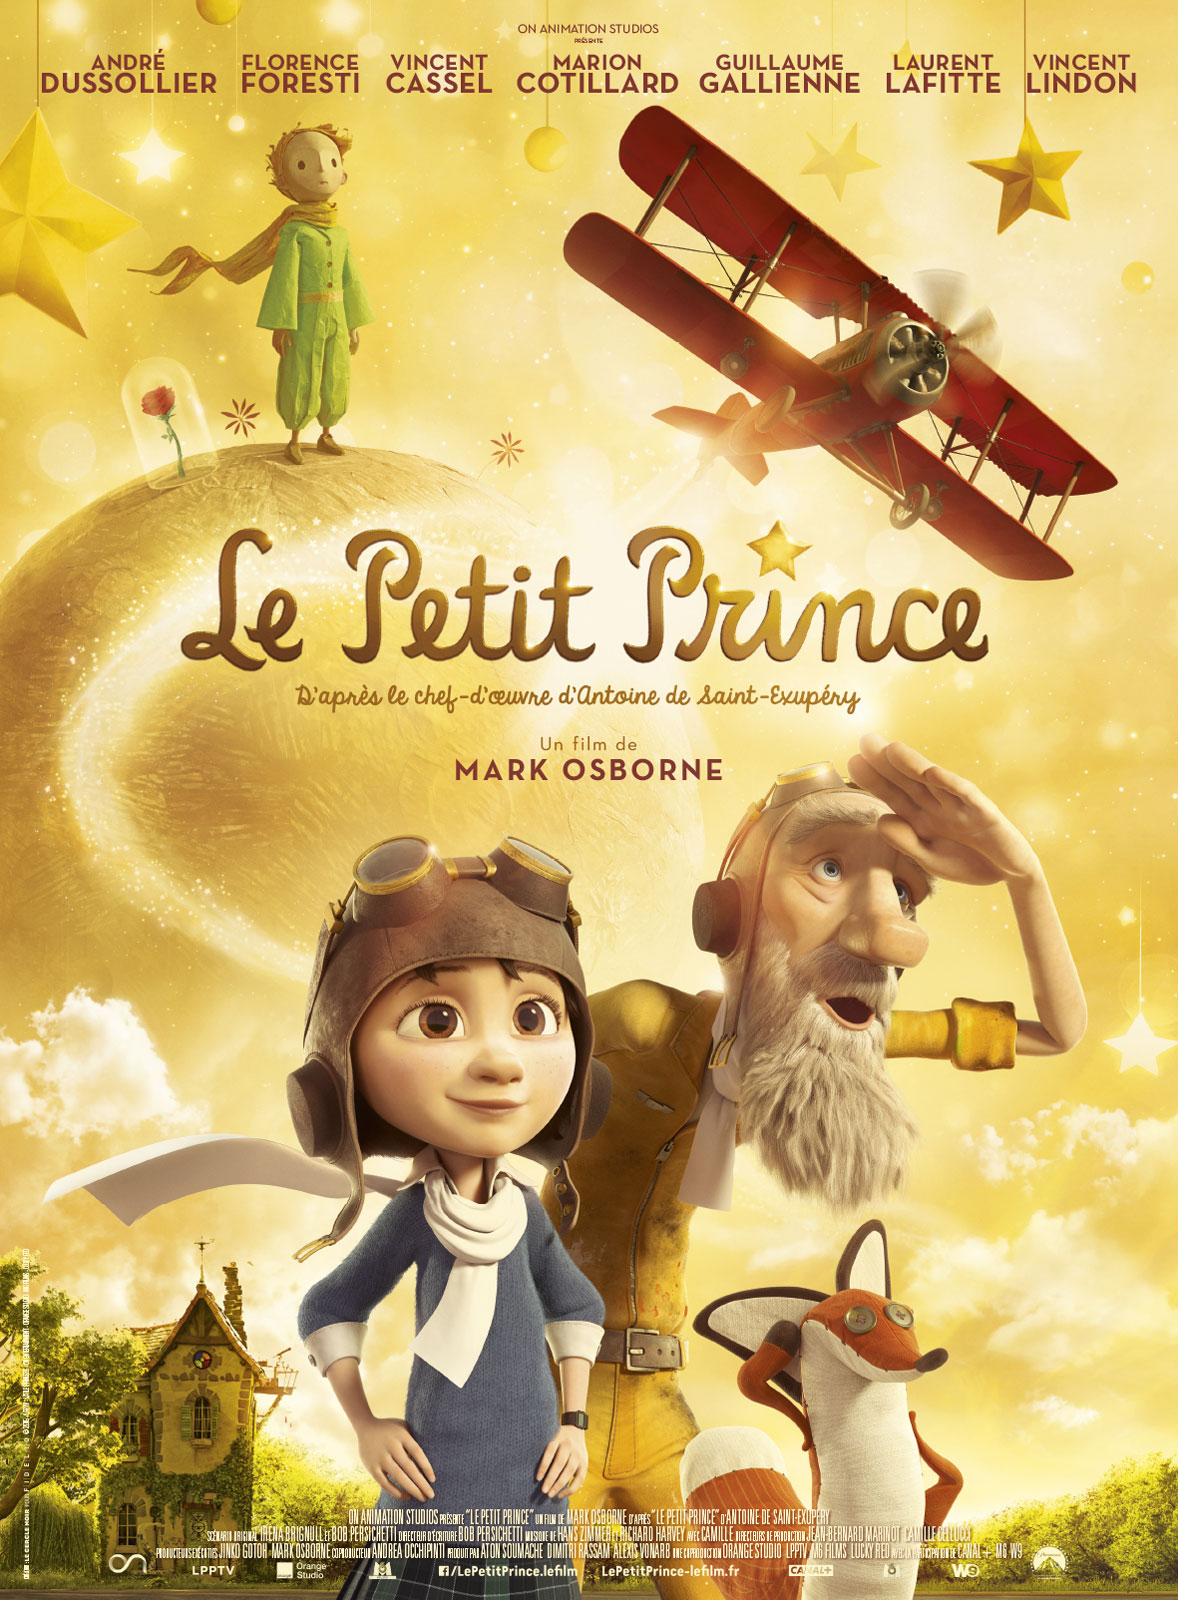 Le Petit Prince "